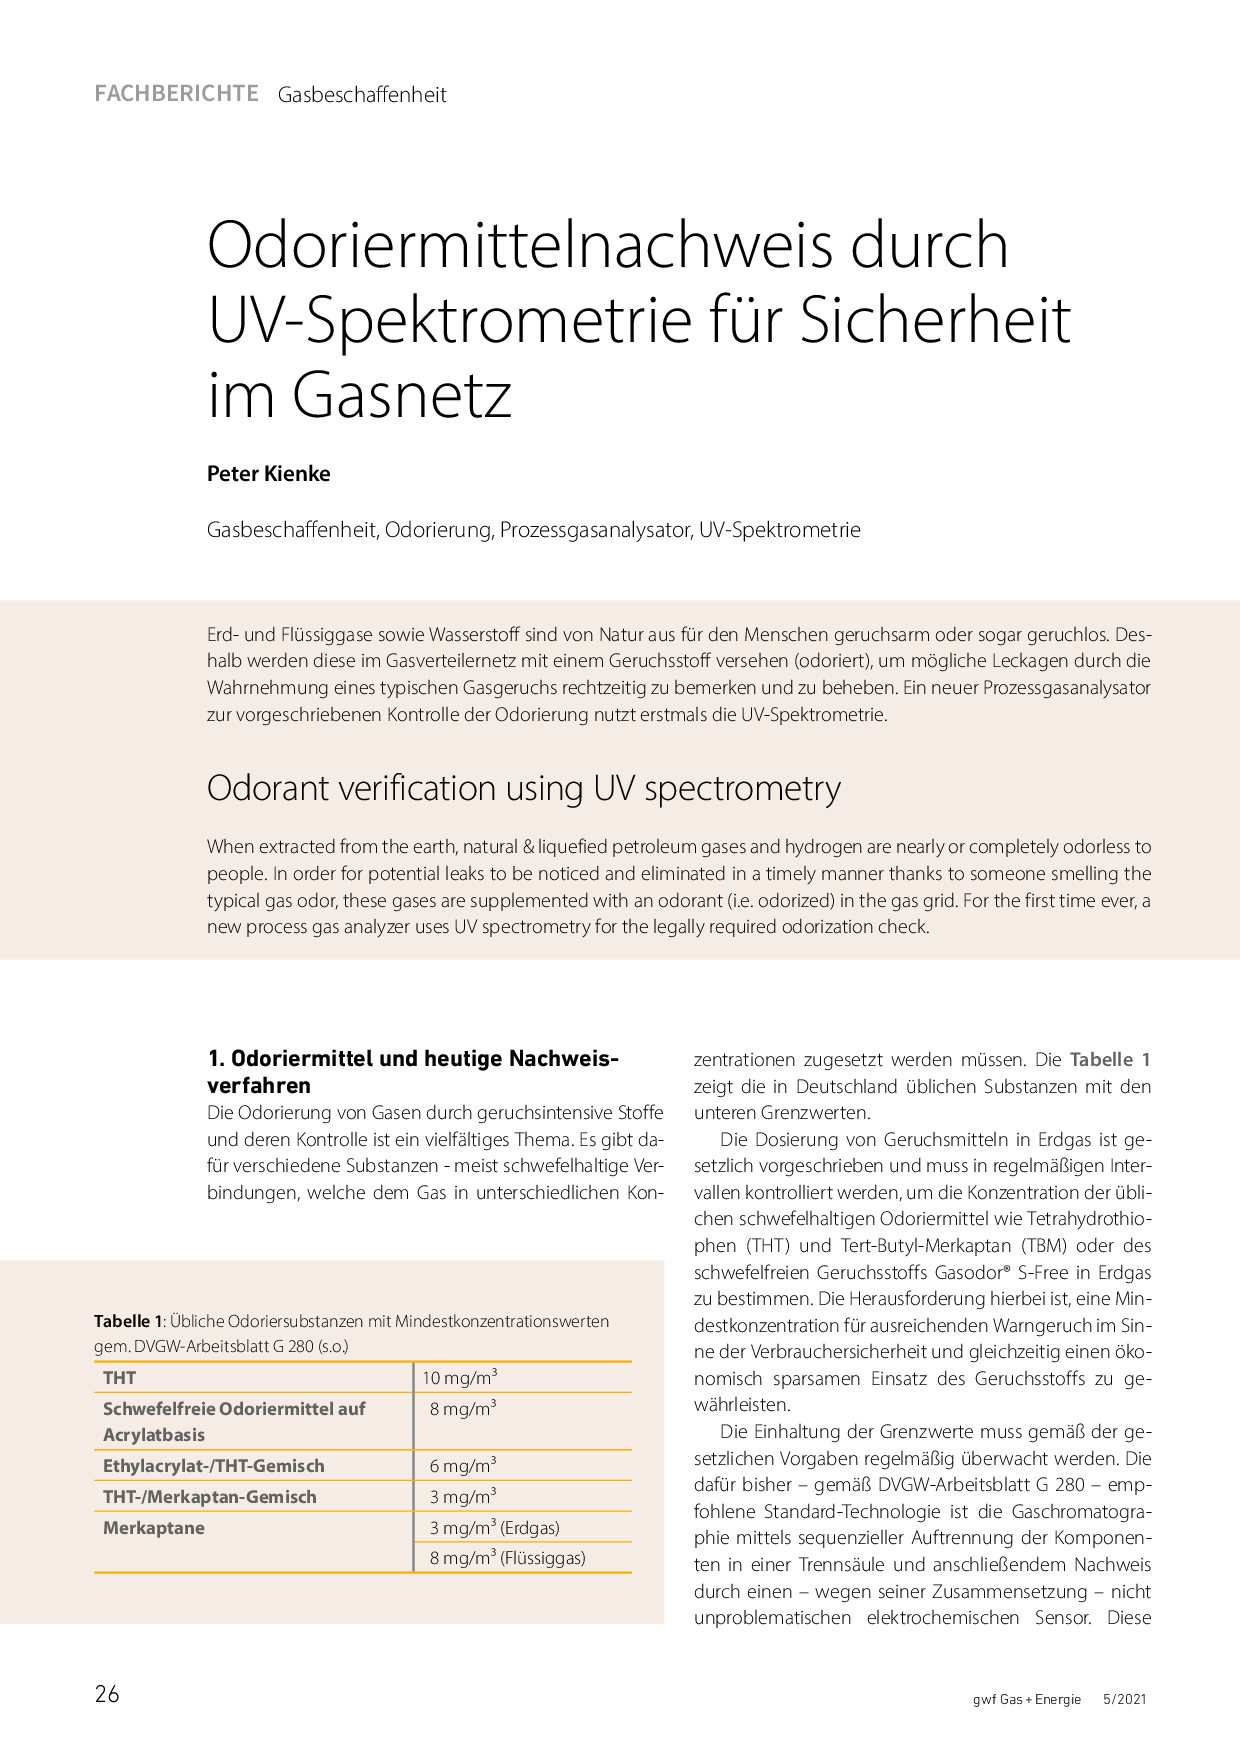 Odoriermittelnachweis durch UV-Spektrometrie für Sicherheit im Gasnetz